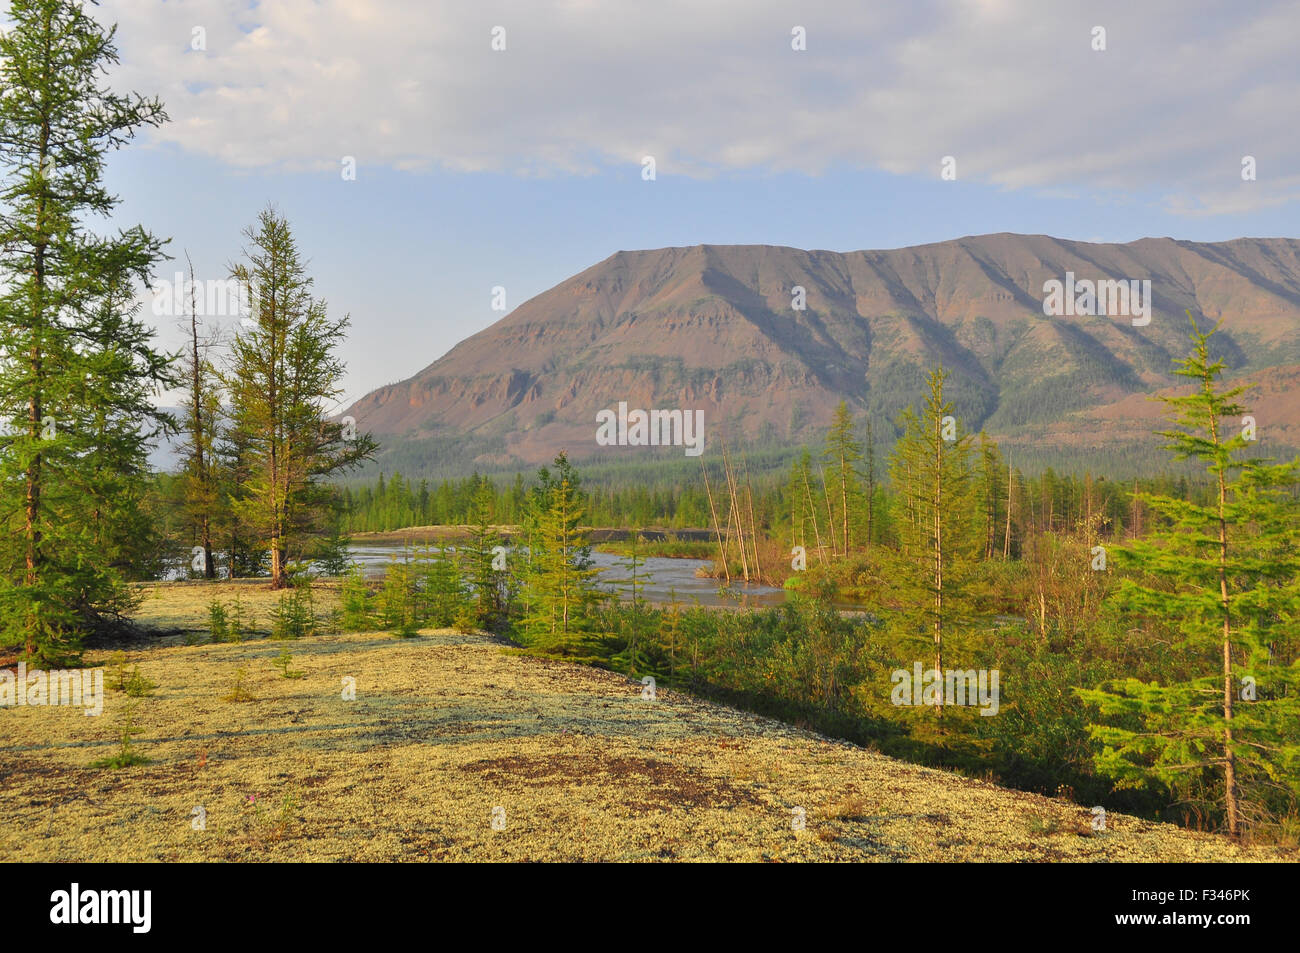 Berge von dem Putorana-Plateau. Sommer Landschaft auf der Taimyr-Halbinsel, Sibirien, Russland. Stockfoto